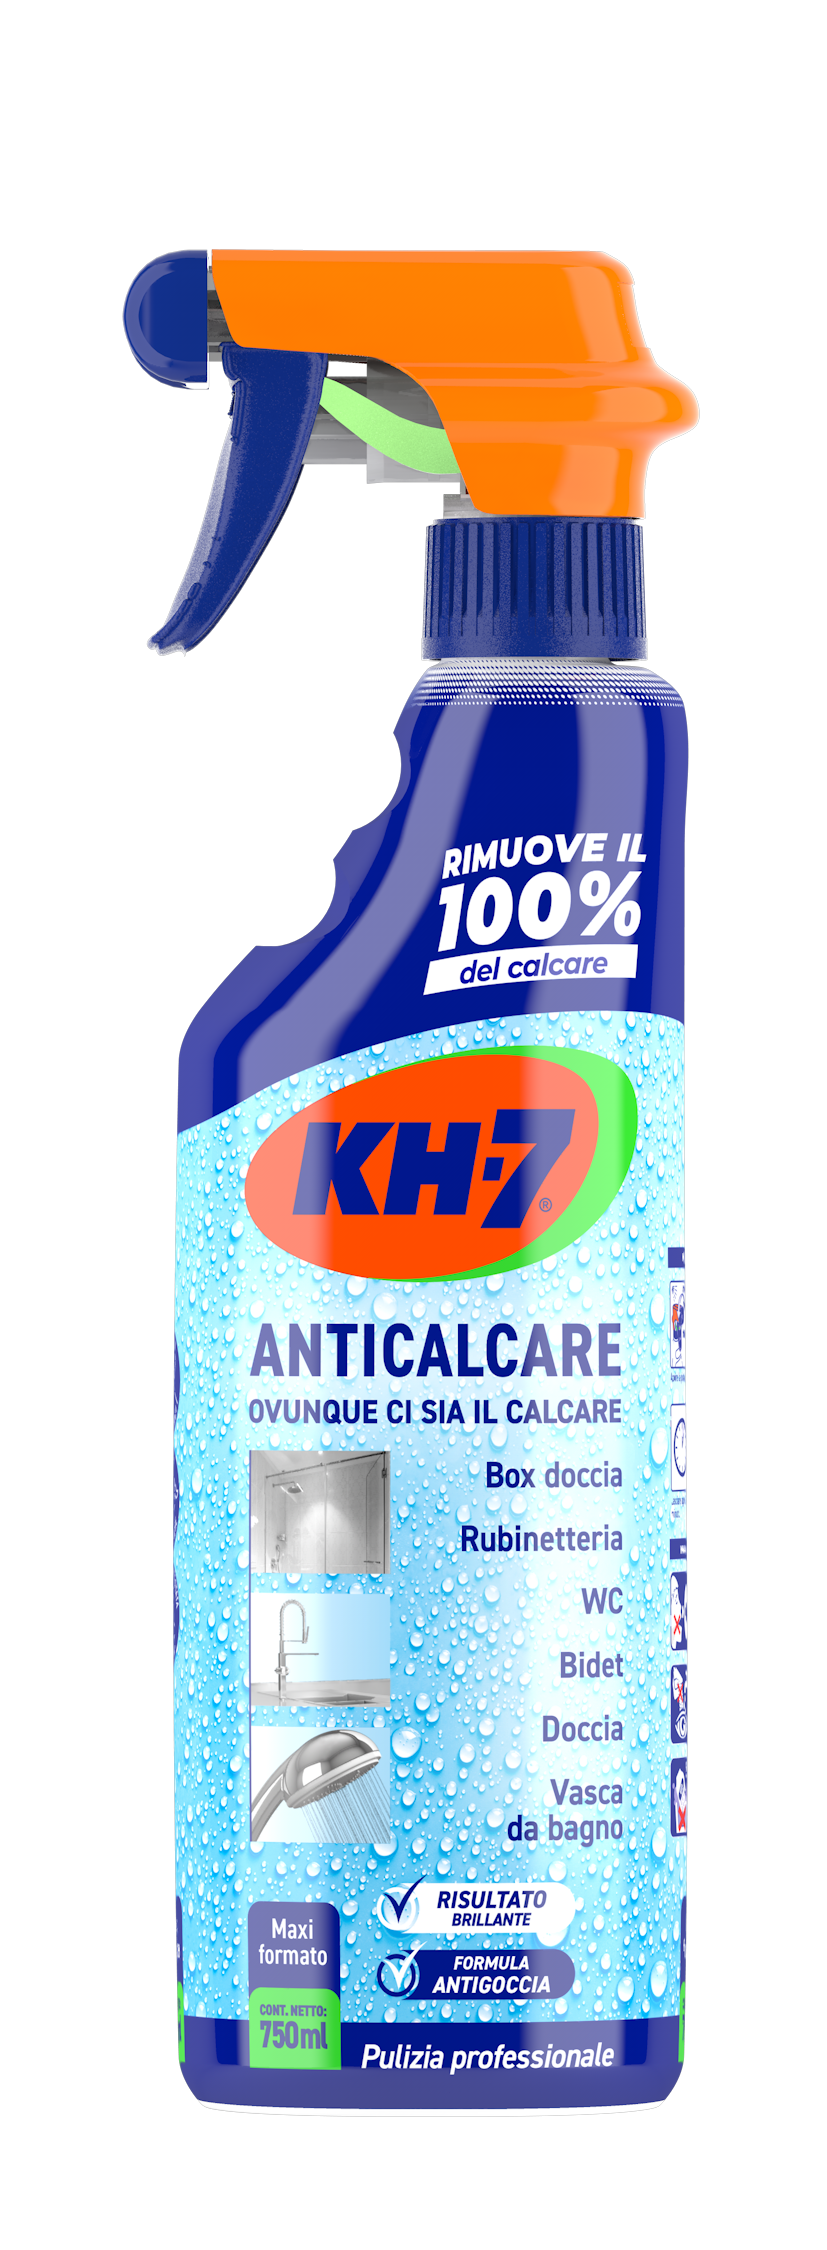 Kh7 Anticalcare